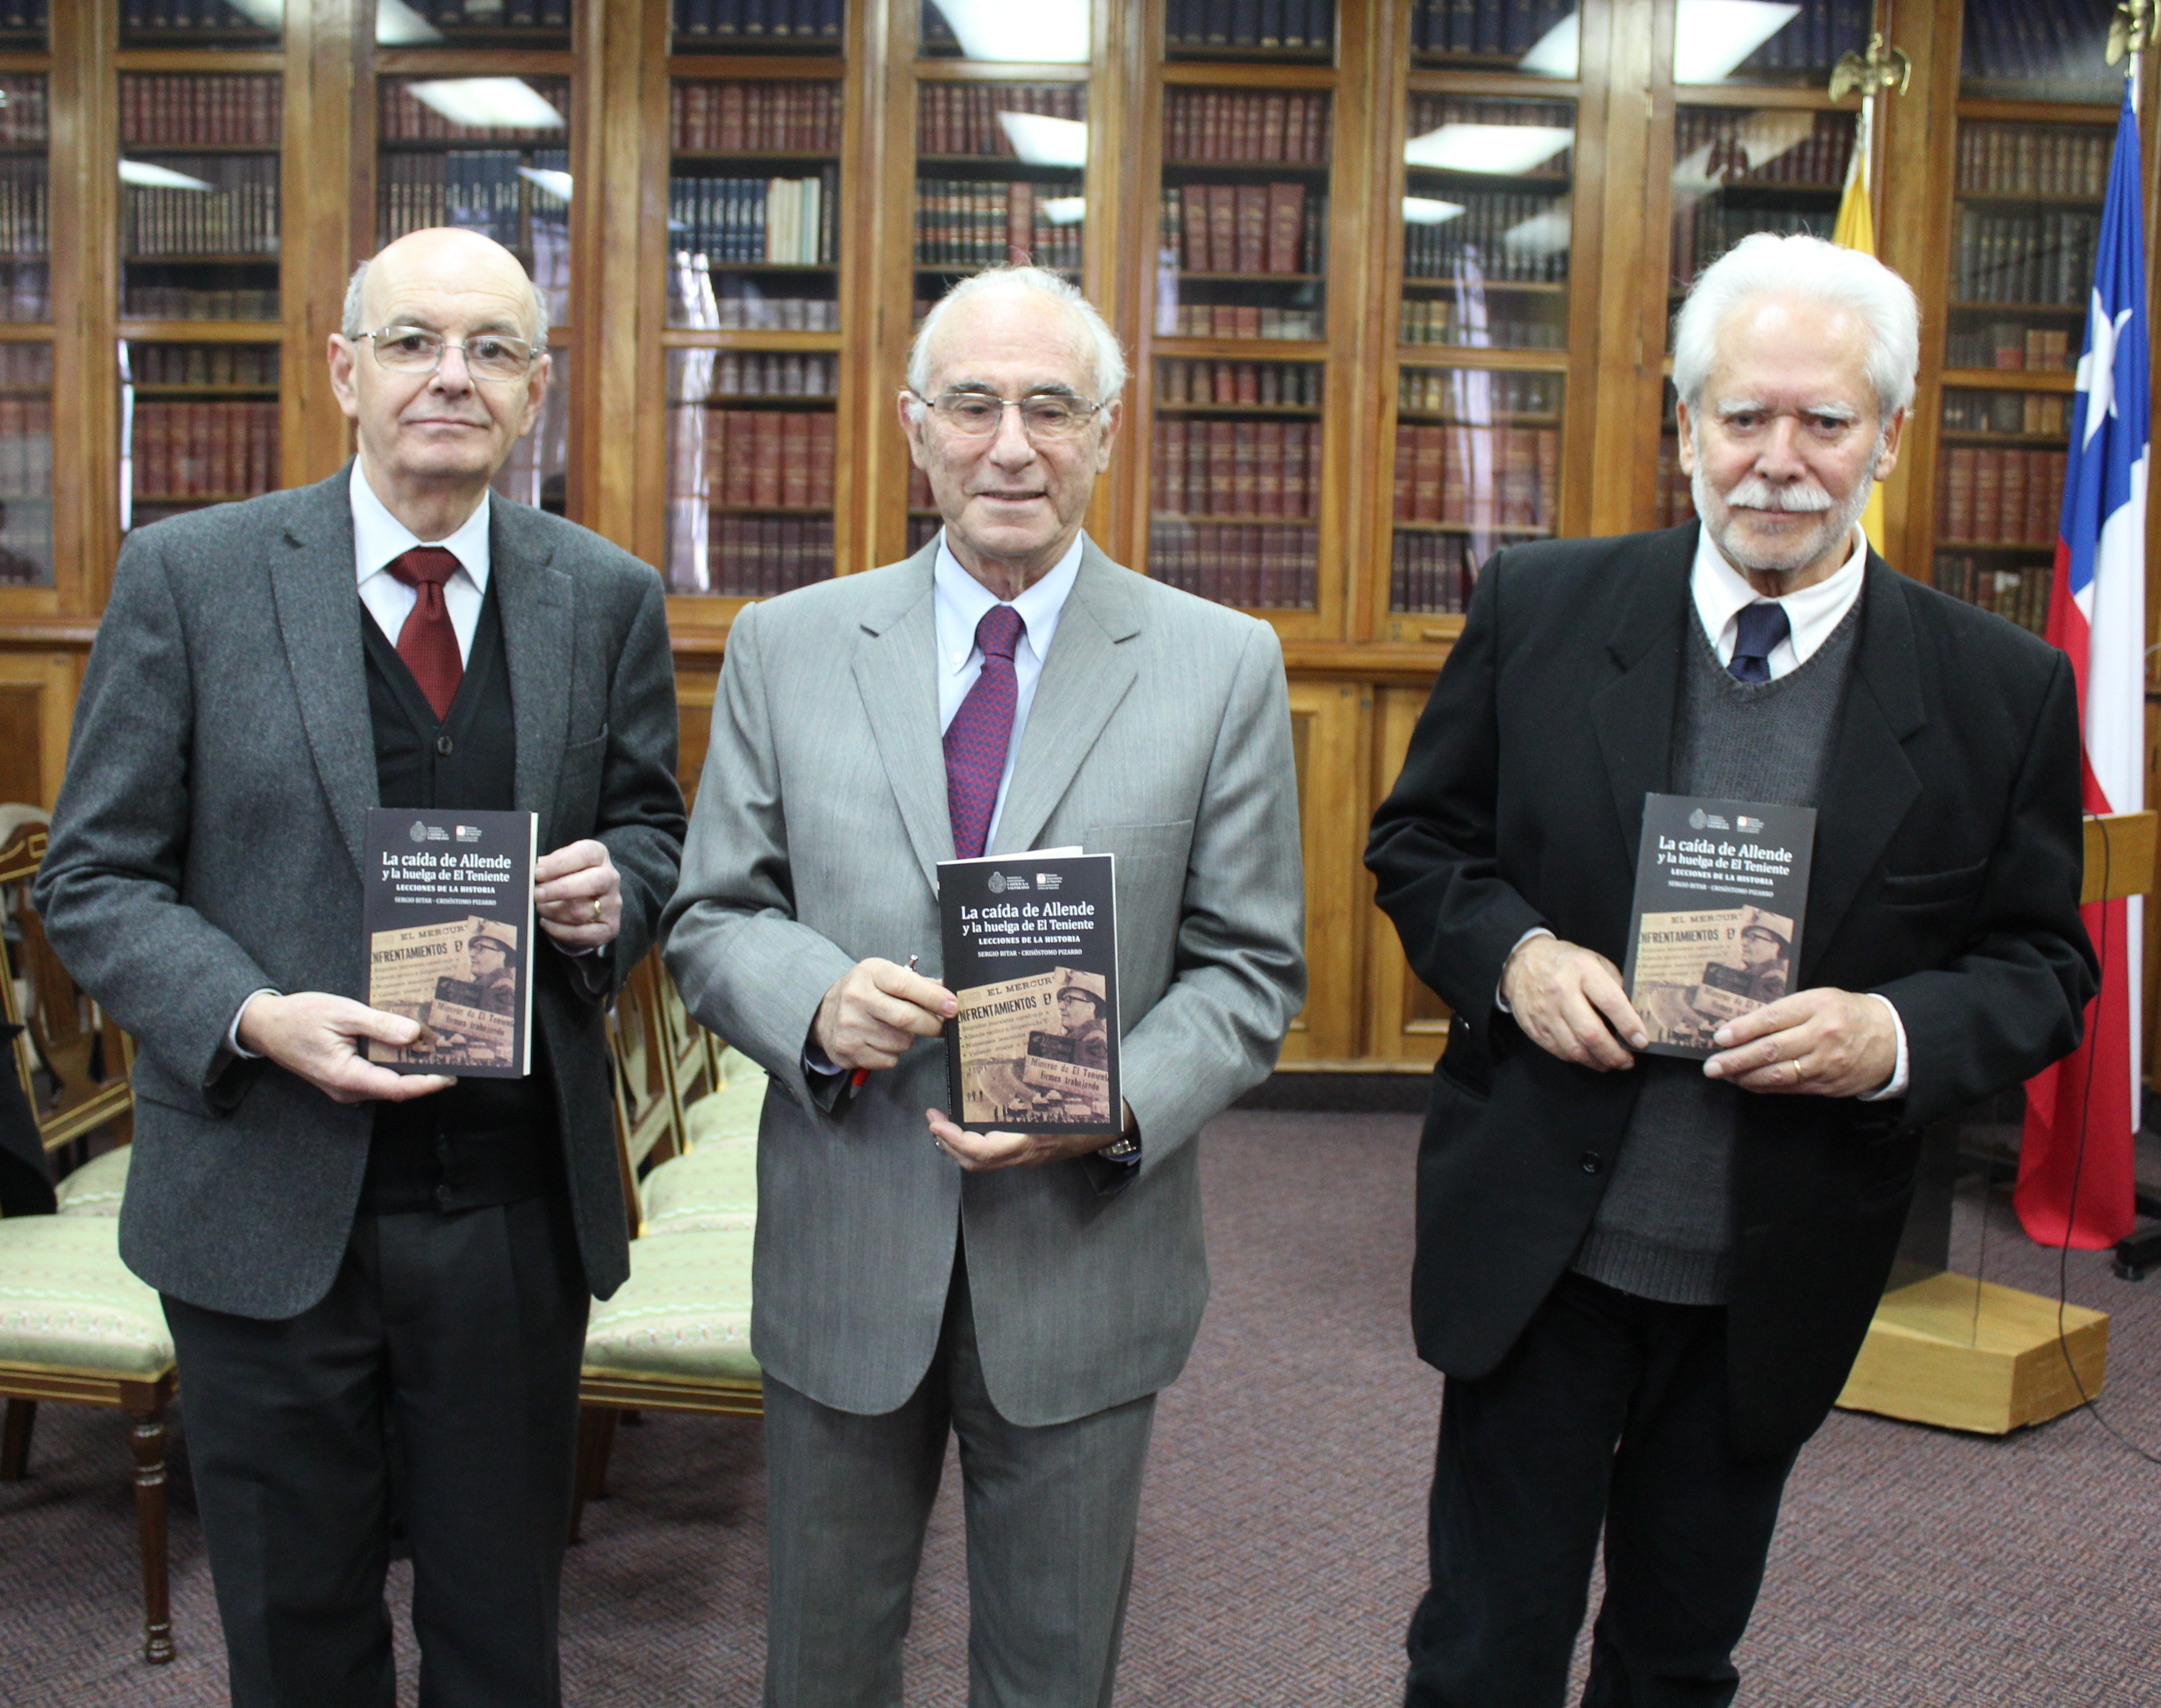 Libro “La Caída de Allende y la huelga de El Teniente” de Sergio Bitar y Crisóstomo Pizarro fue relanzado en la PUCV